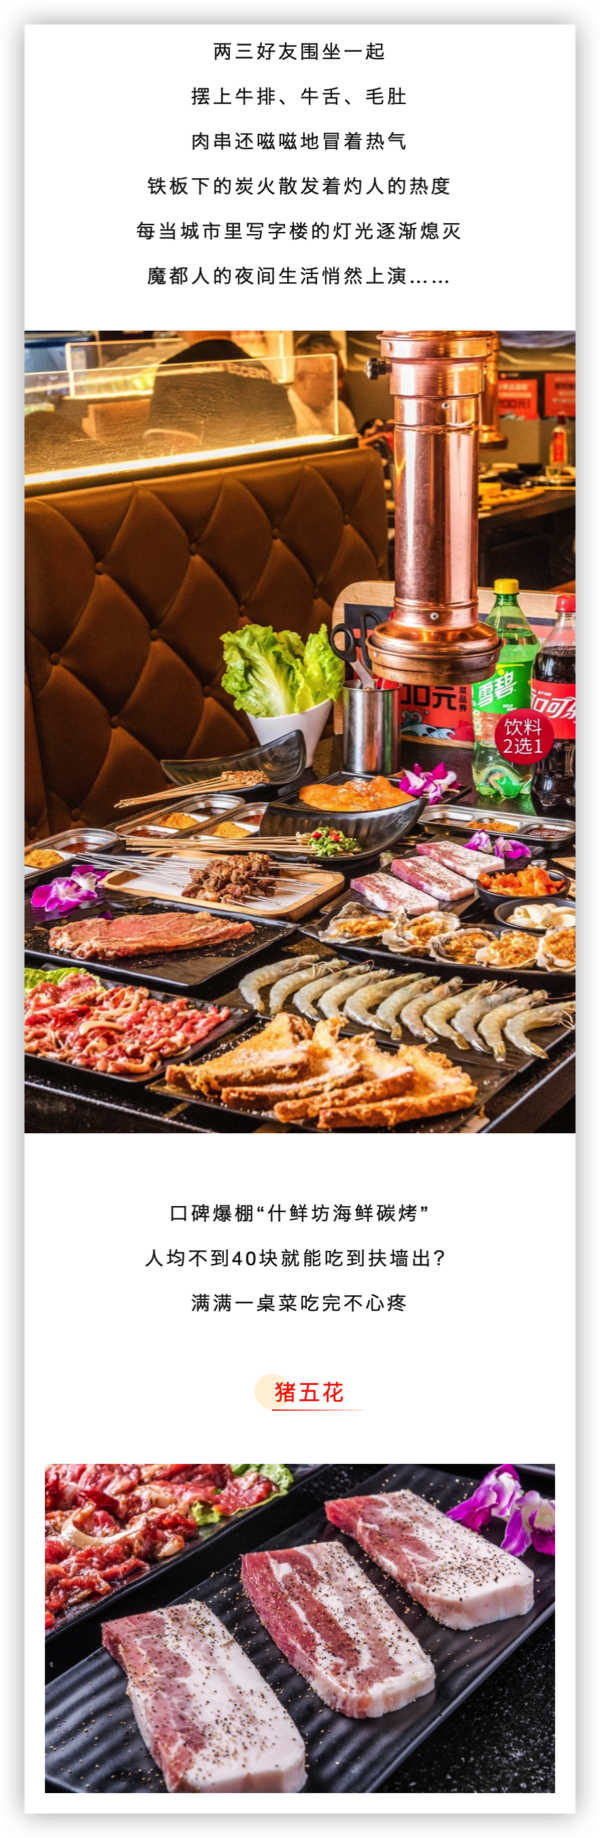 上海爱琴海店 什鲜坊·东北海鲜烤肉4人套餐